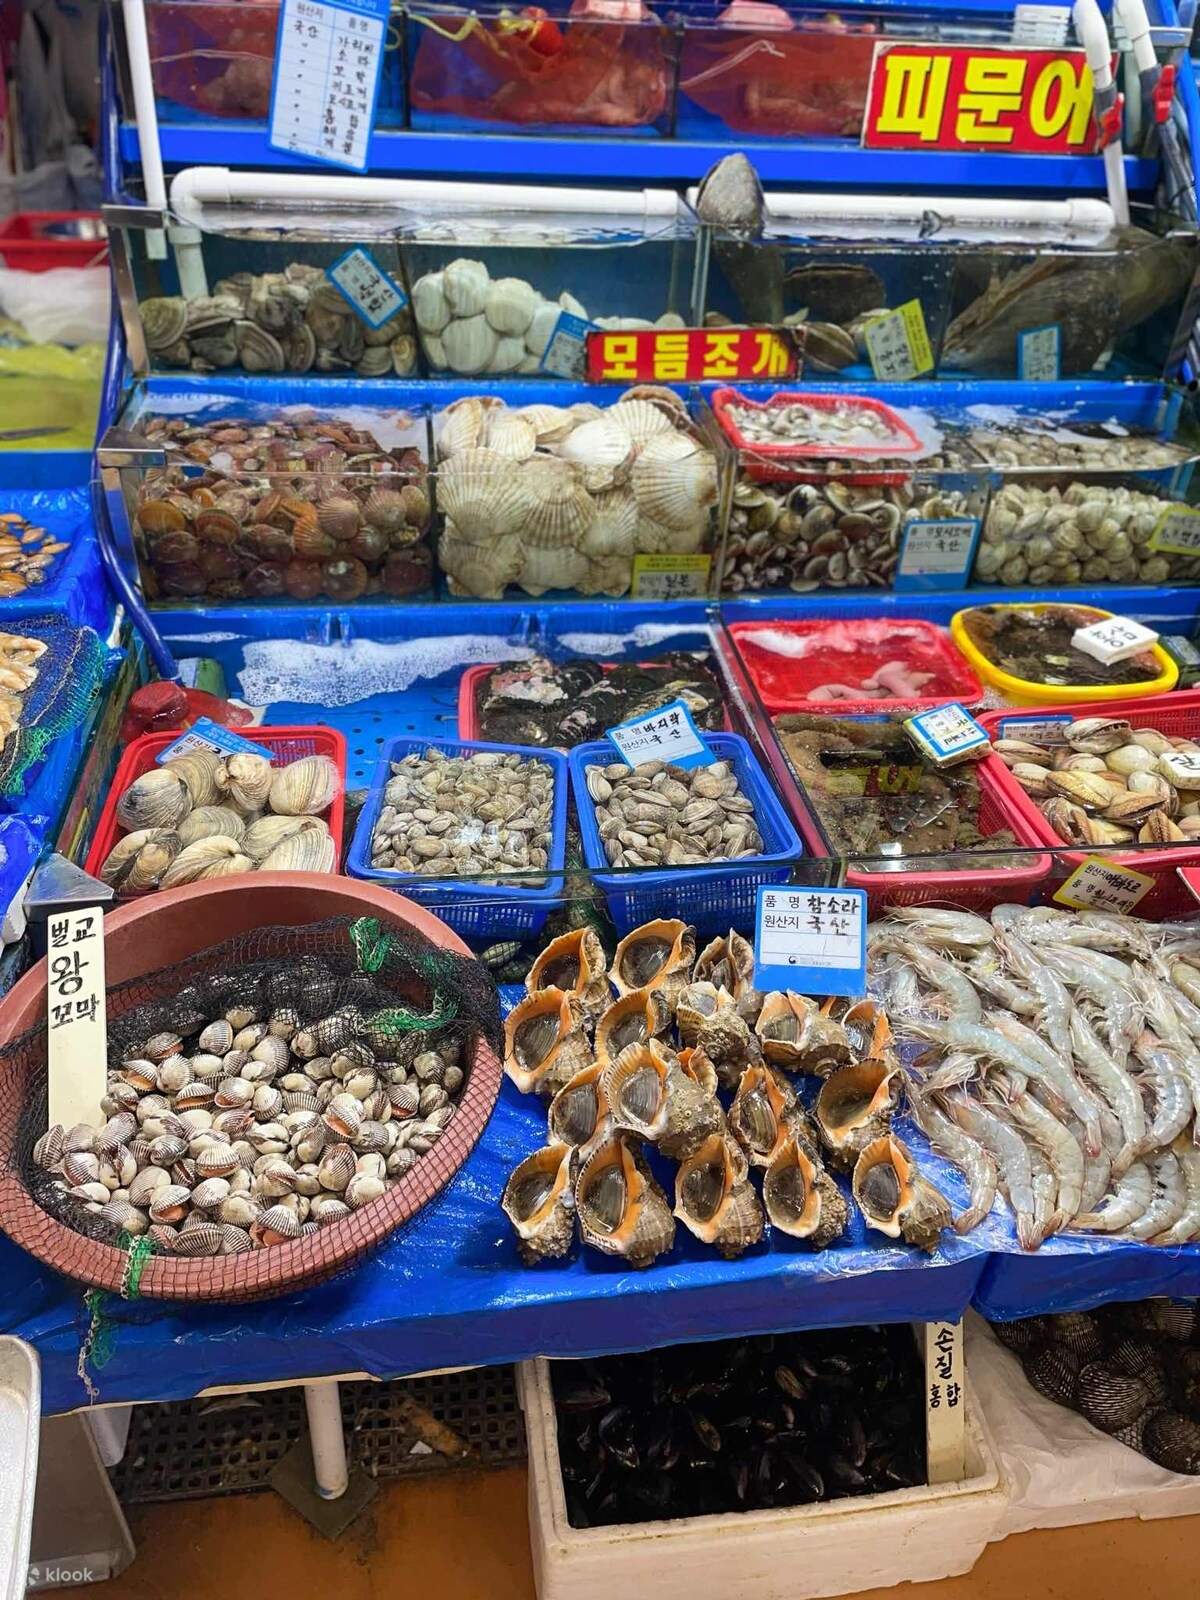 ทัวร์ชิมอาหารในตลาดปลาโนรยางจิน - Klook ประเทศไทย